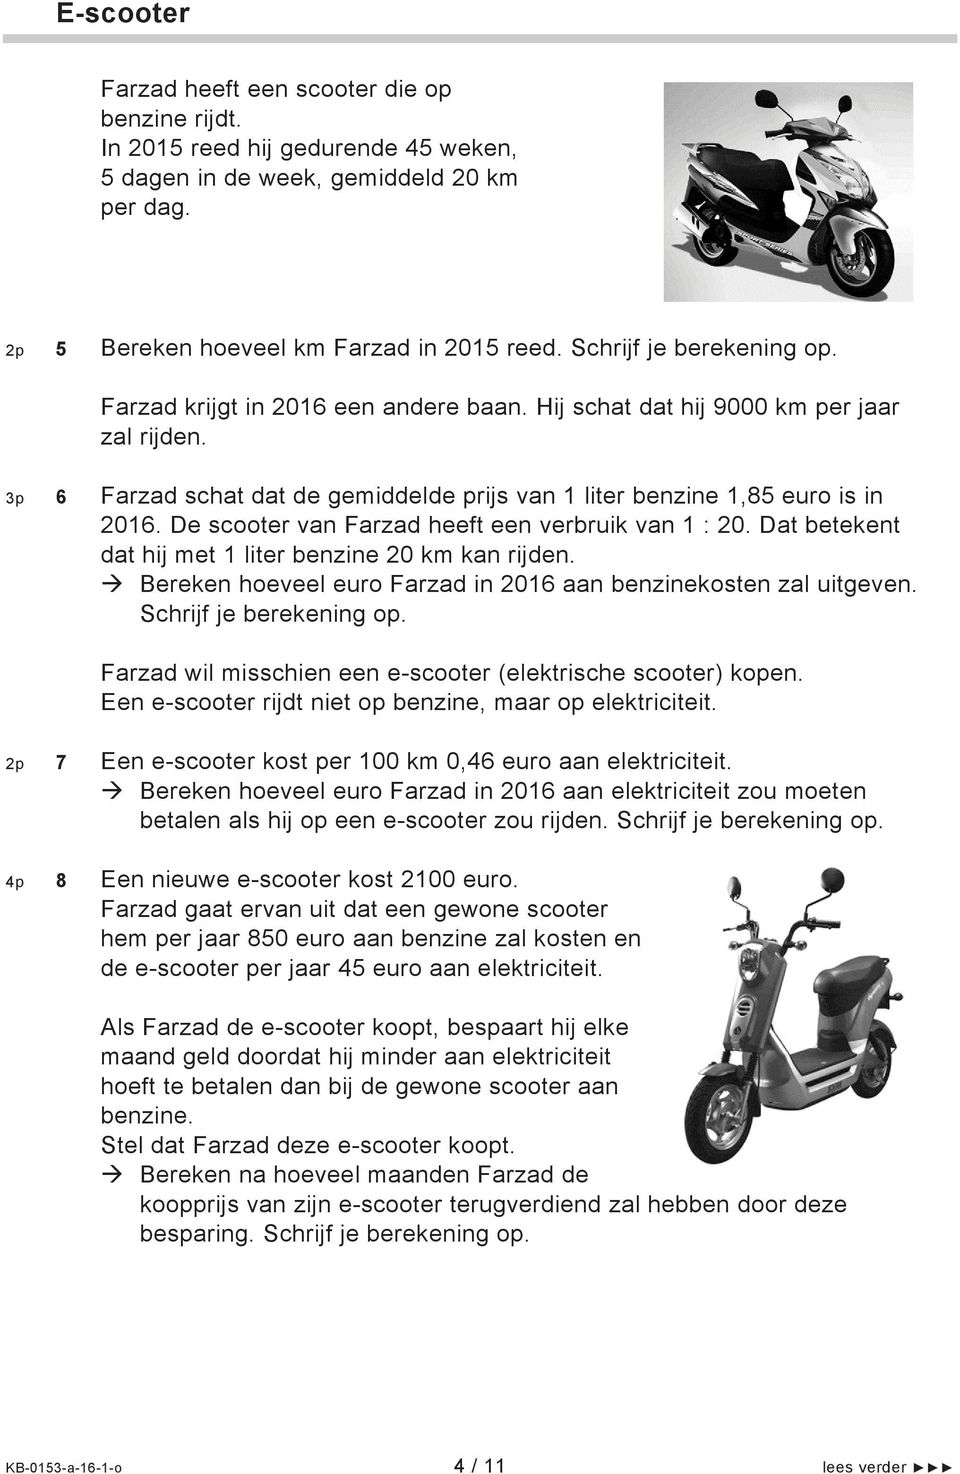 De scooter van Farzad heeft een verbruik van 1 : 20. Dat betekent dat hij met 1 liter benzine 20 km kan rijden. Bereken hoeveel euro Farzad in 2016 aan benzinekosten zal uitgeven.